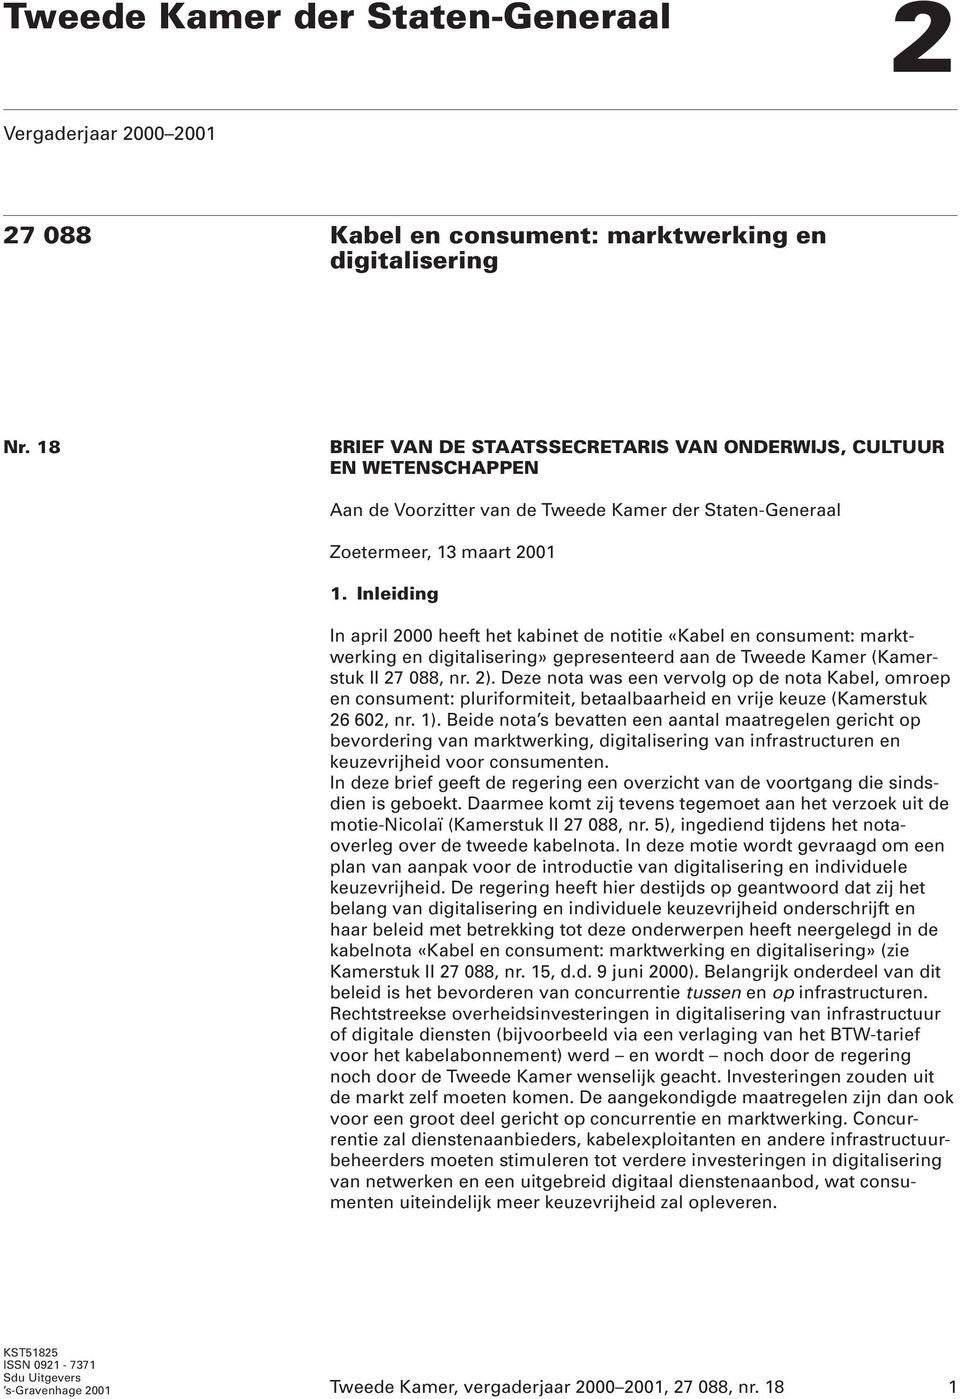 Inleiding In april 2000 heeft het kabinet de notitie «Kabel en consument: marktwerking en digitalisering» gepresenteerd aan de Tweede Kamer (Kamerstuk II 27 088, nr. 2).